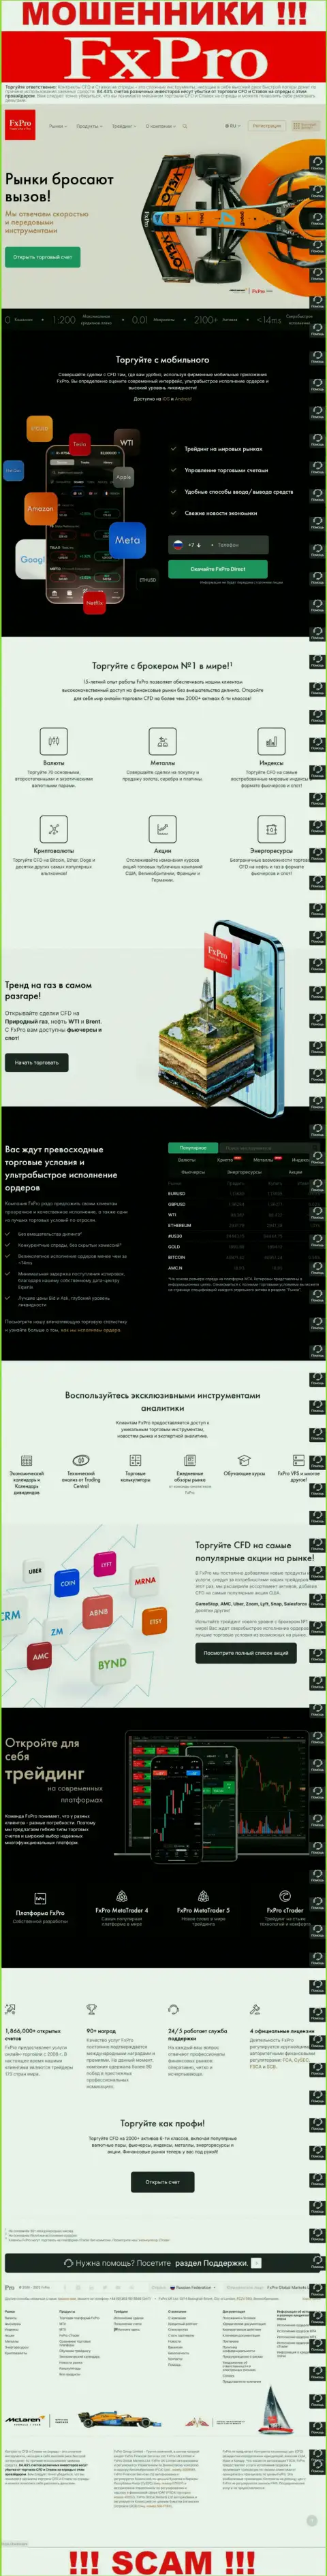 Капкан для лохов - официальный онлайн-сервис мошенников ФхПро